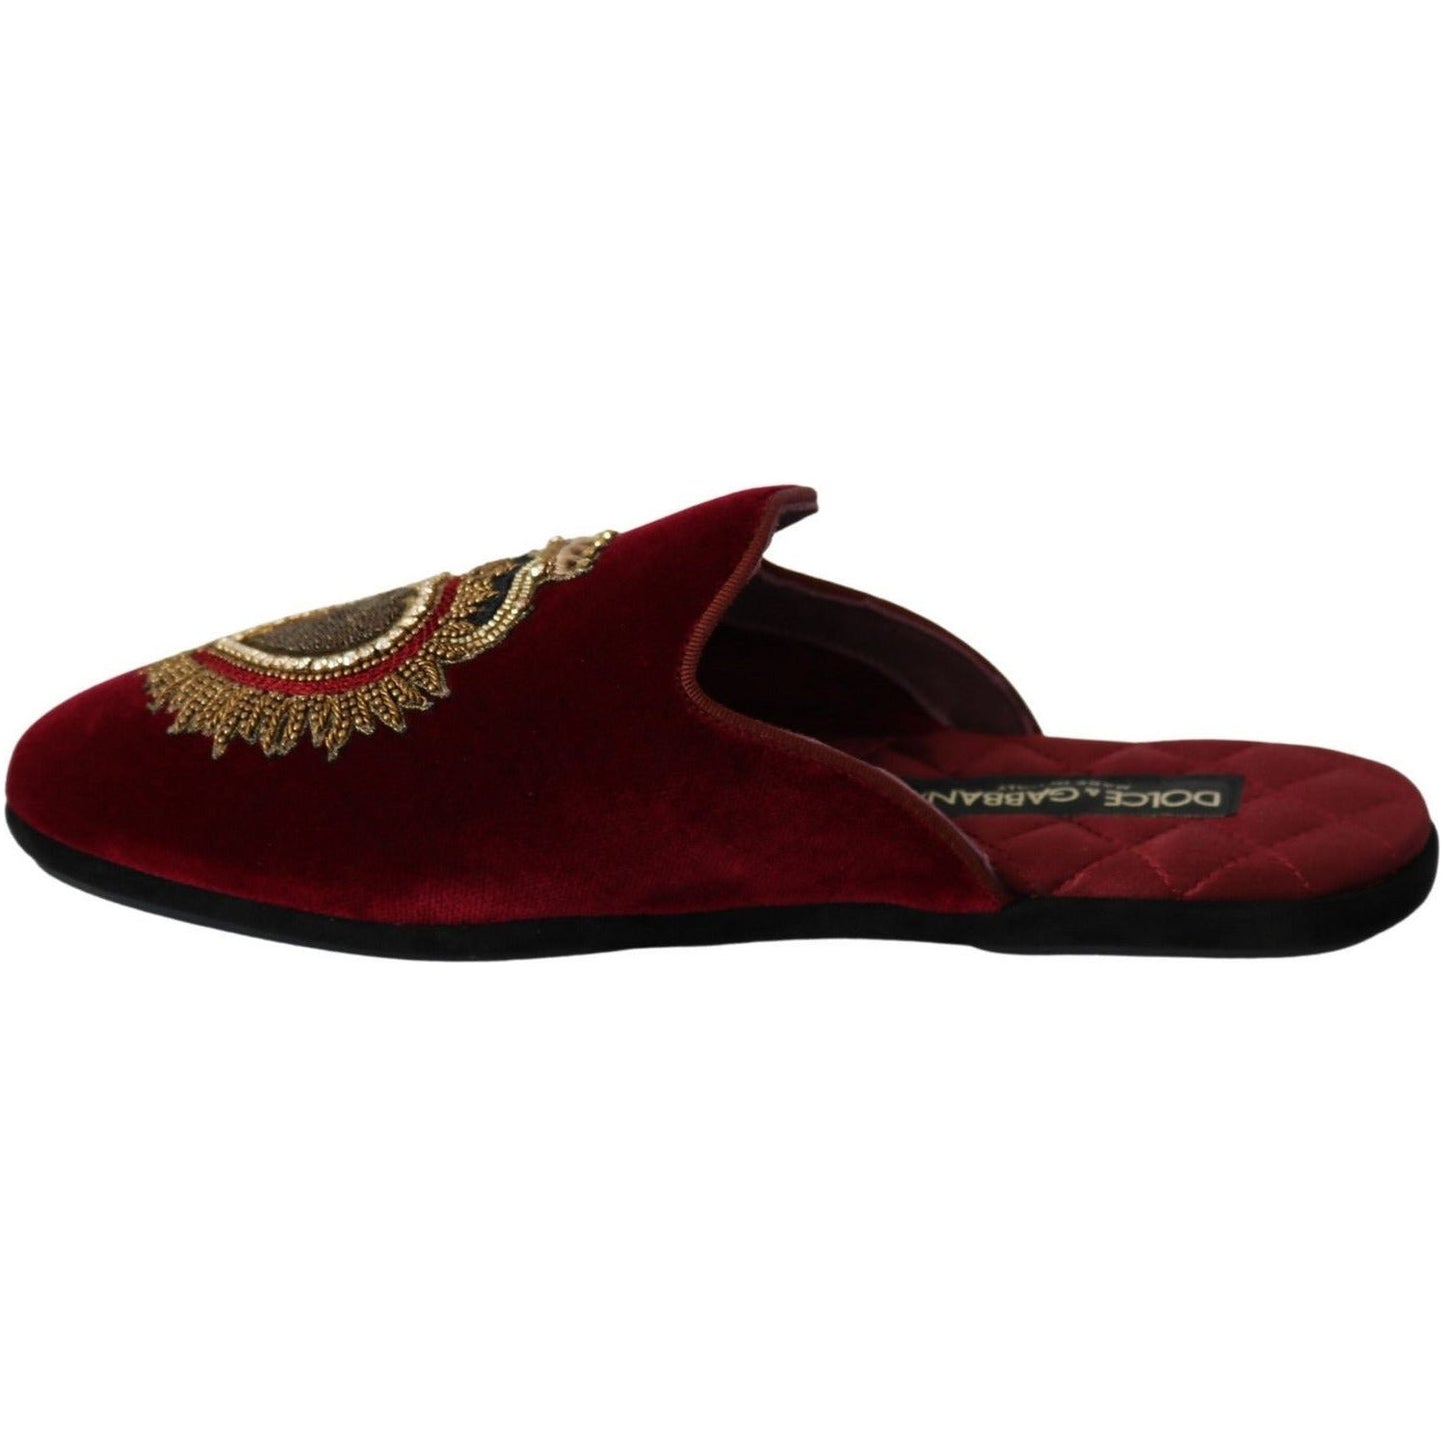 Dolce & Gabbana Red Velvet Embroidered Slides red-velvet-sacred-heart-embroidery-slides-shoes IMG_0088-2-scaled-7edc8462-2ab.jpg